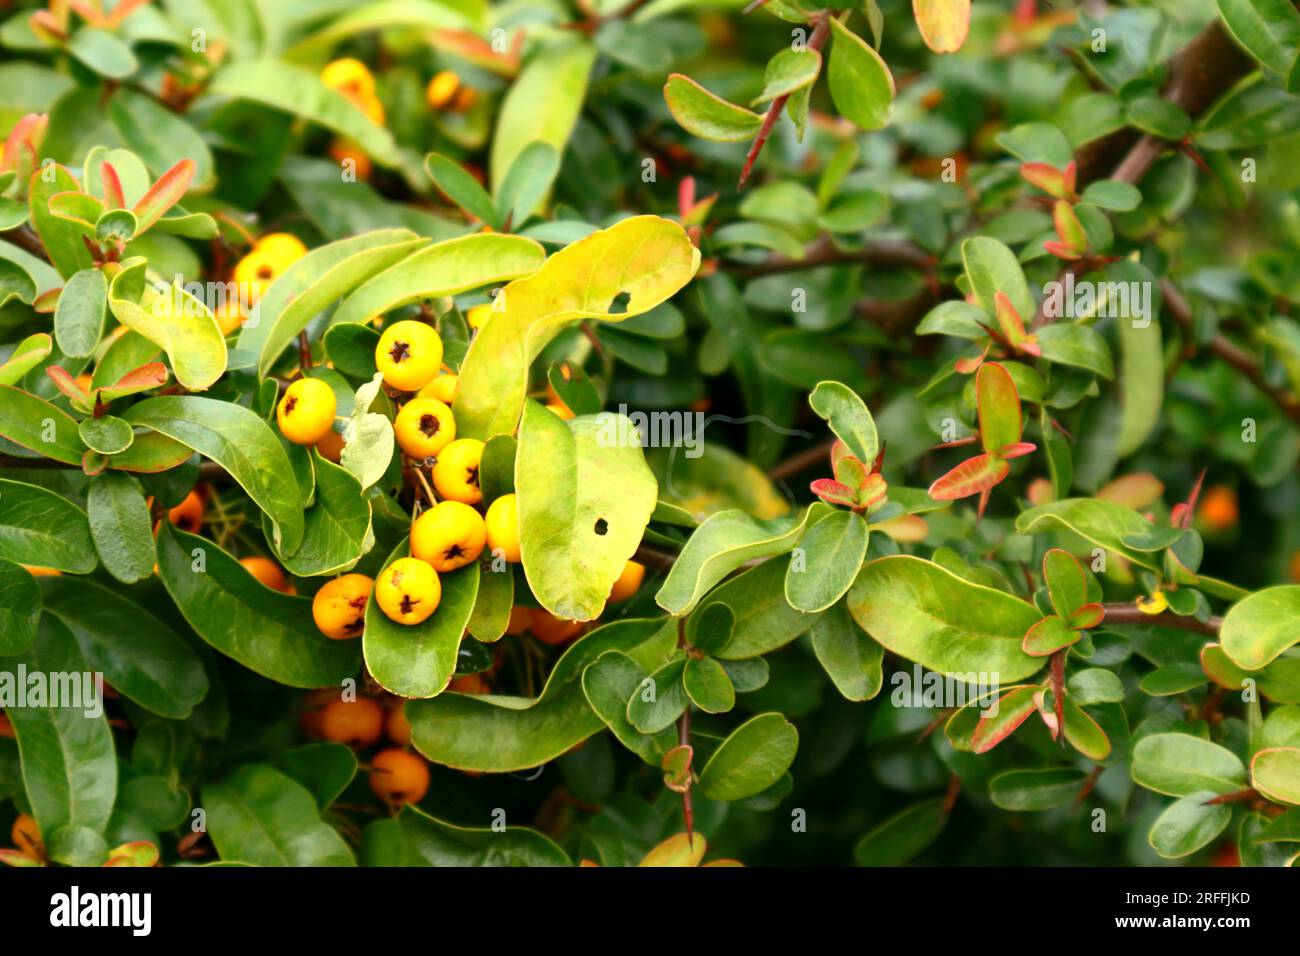 Pyracantha, gelbe Beere, auf grün-gelbem Laub. Stockfoto